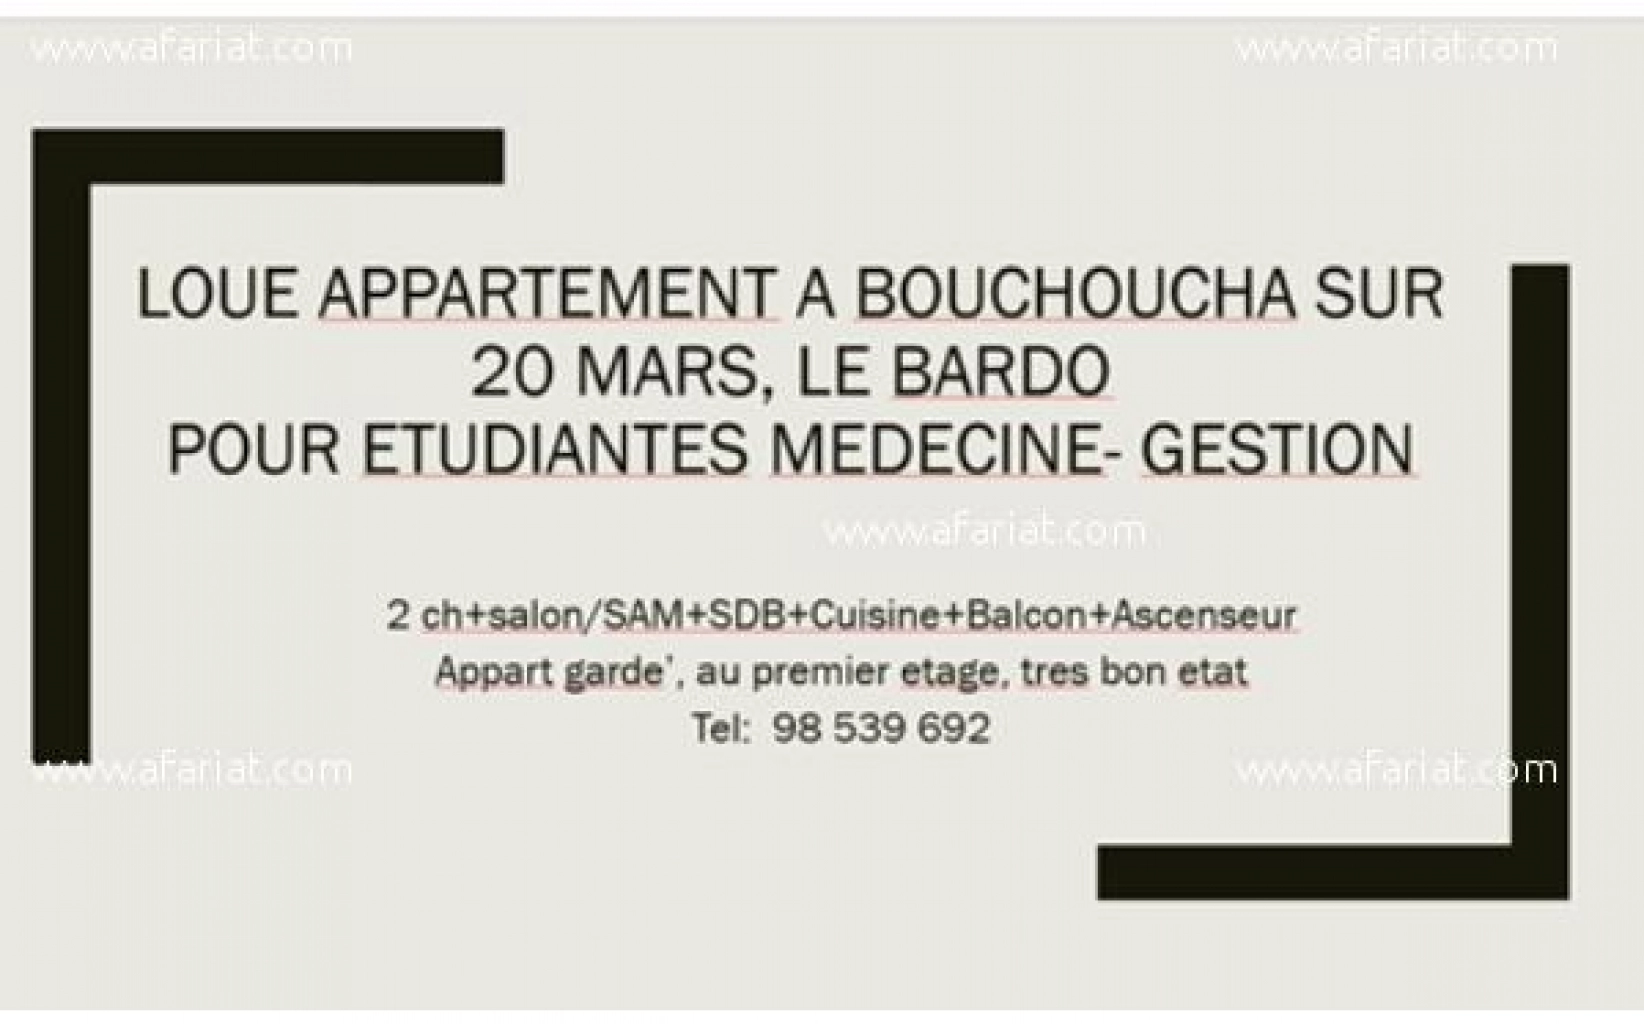 Appartement pour etudiant(e)s Medecine/ Gestion